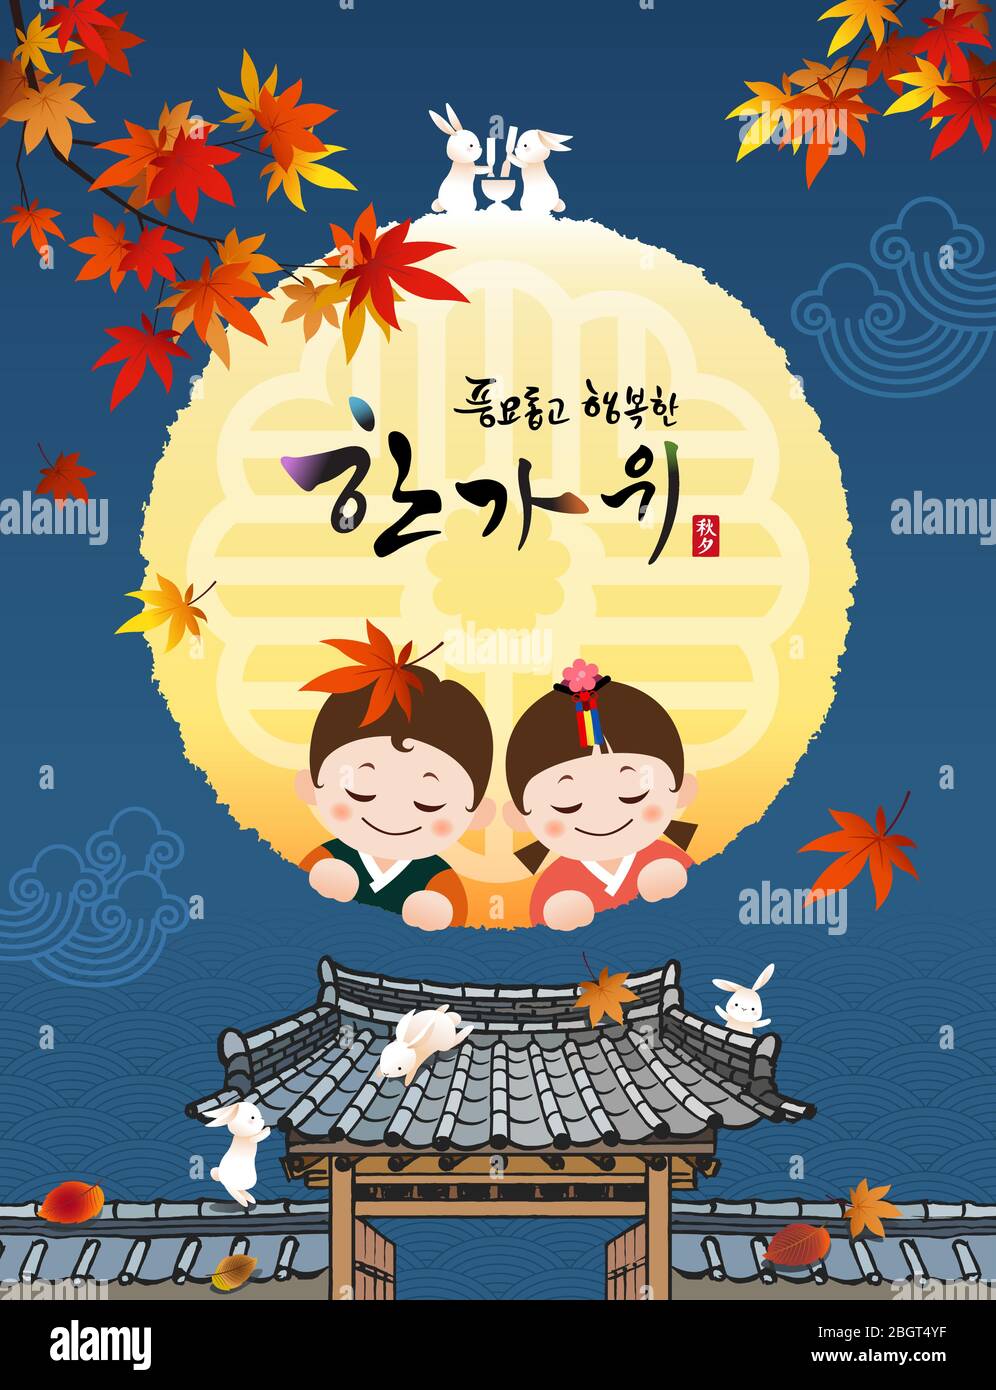 Récolte riche et heureux Chuseok, Hangawi, traduction coréenne. Paysage d'automne, pleine lune, lapins, et les enfants traditionnels hanbok vous accueillent. Illustration de Vecteur